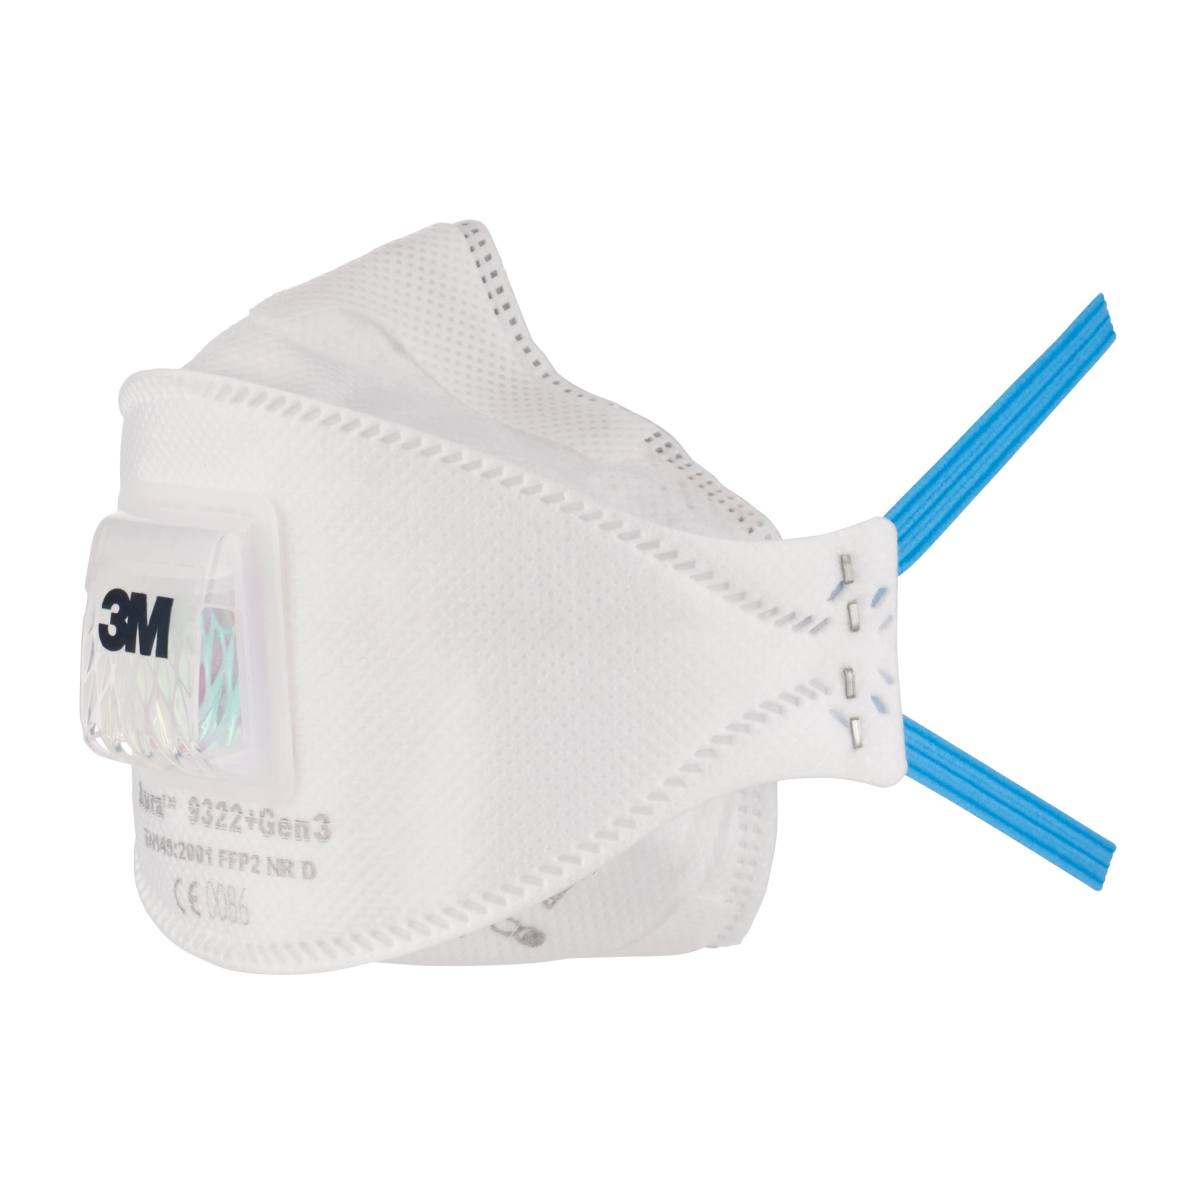 3M 9322+ Gen3 Aura Atemschutzmaske FFP2 mit Cool-Flow Ausatemventil, bis zum 10-fachen des Grenzwertes (hygienisch einzelverpackt)